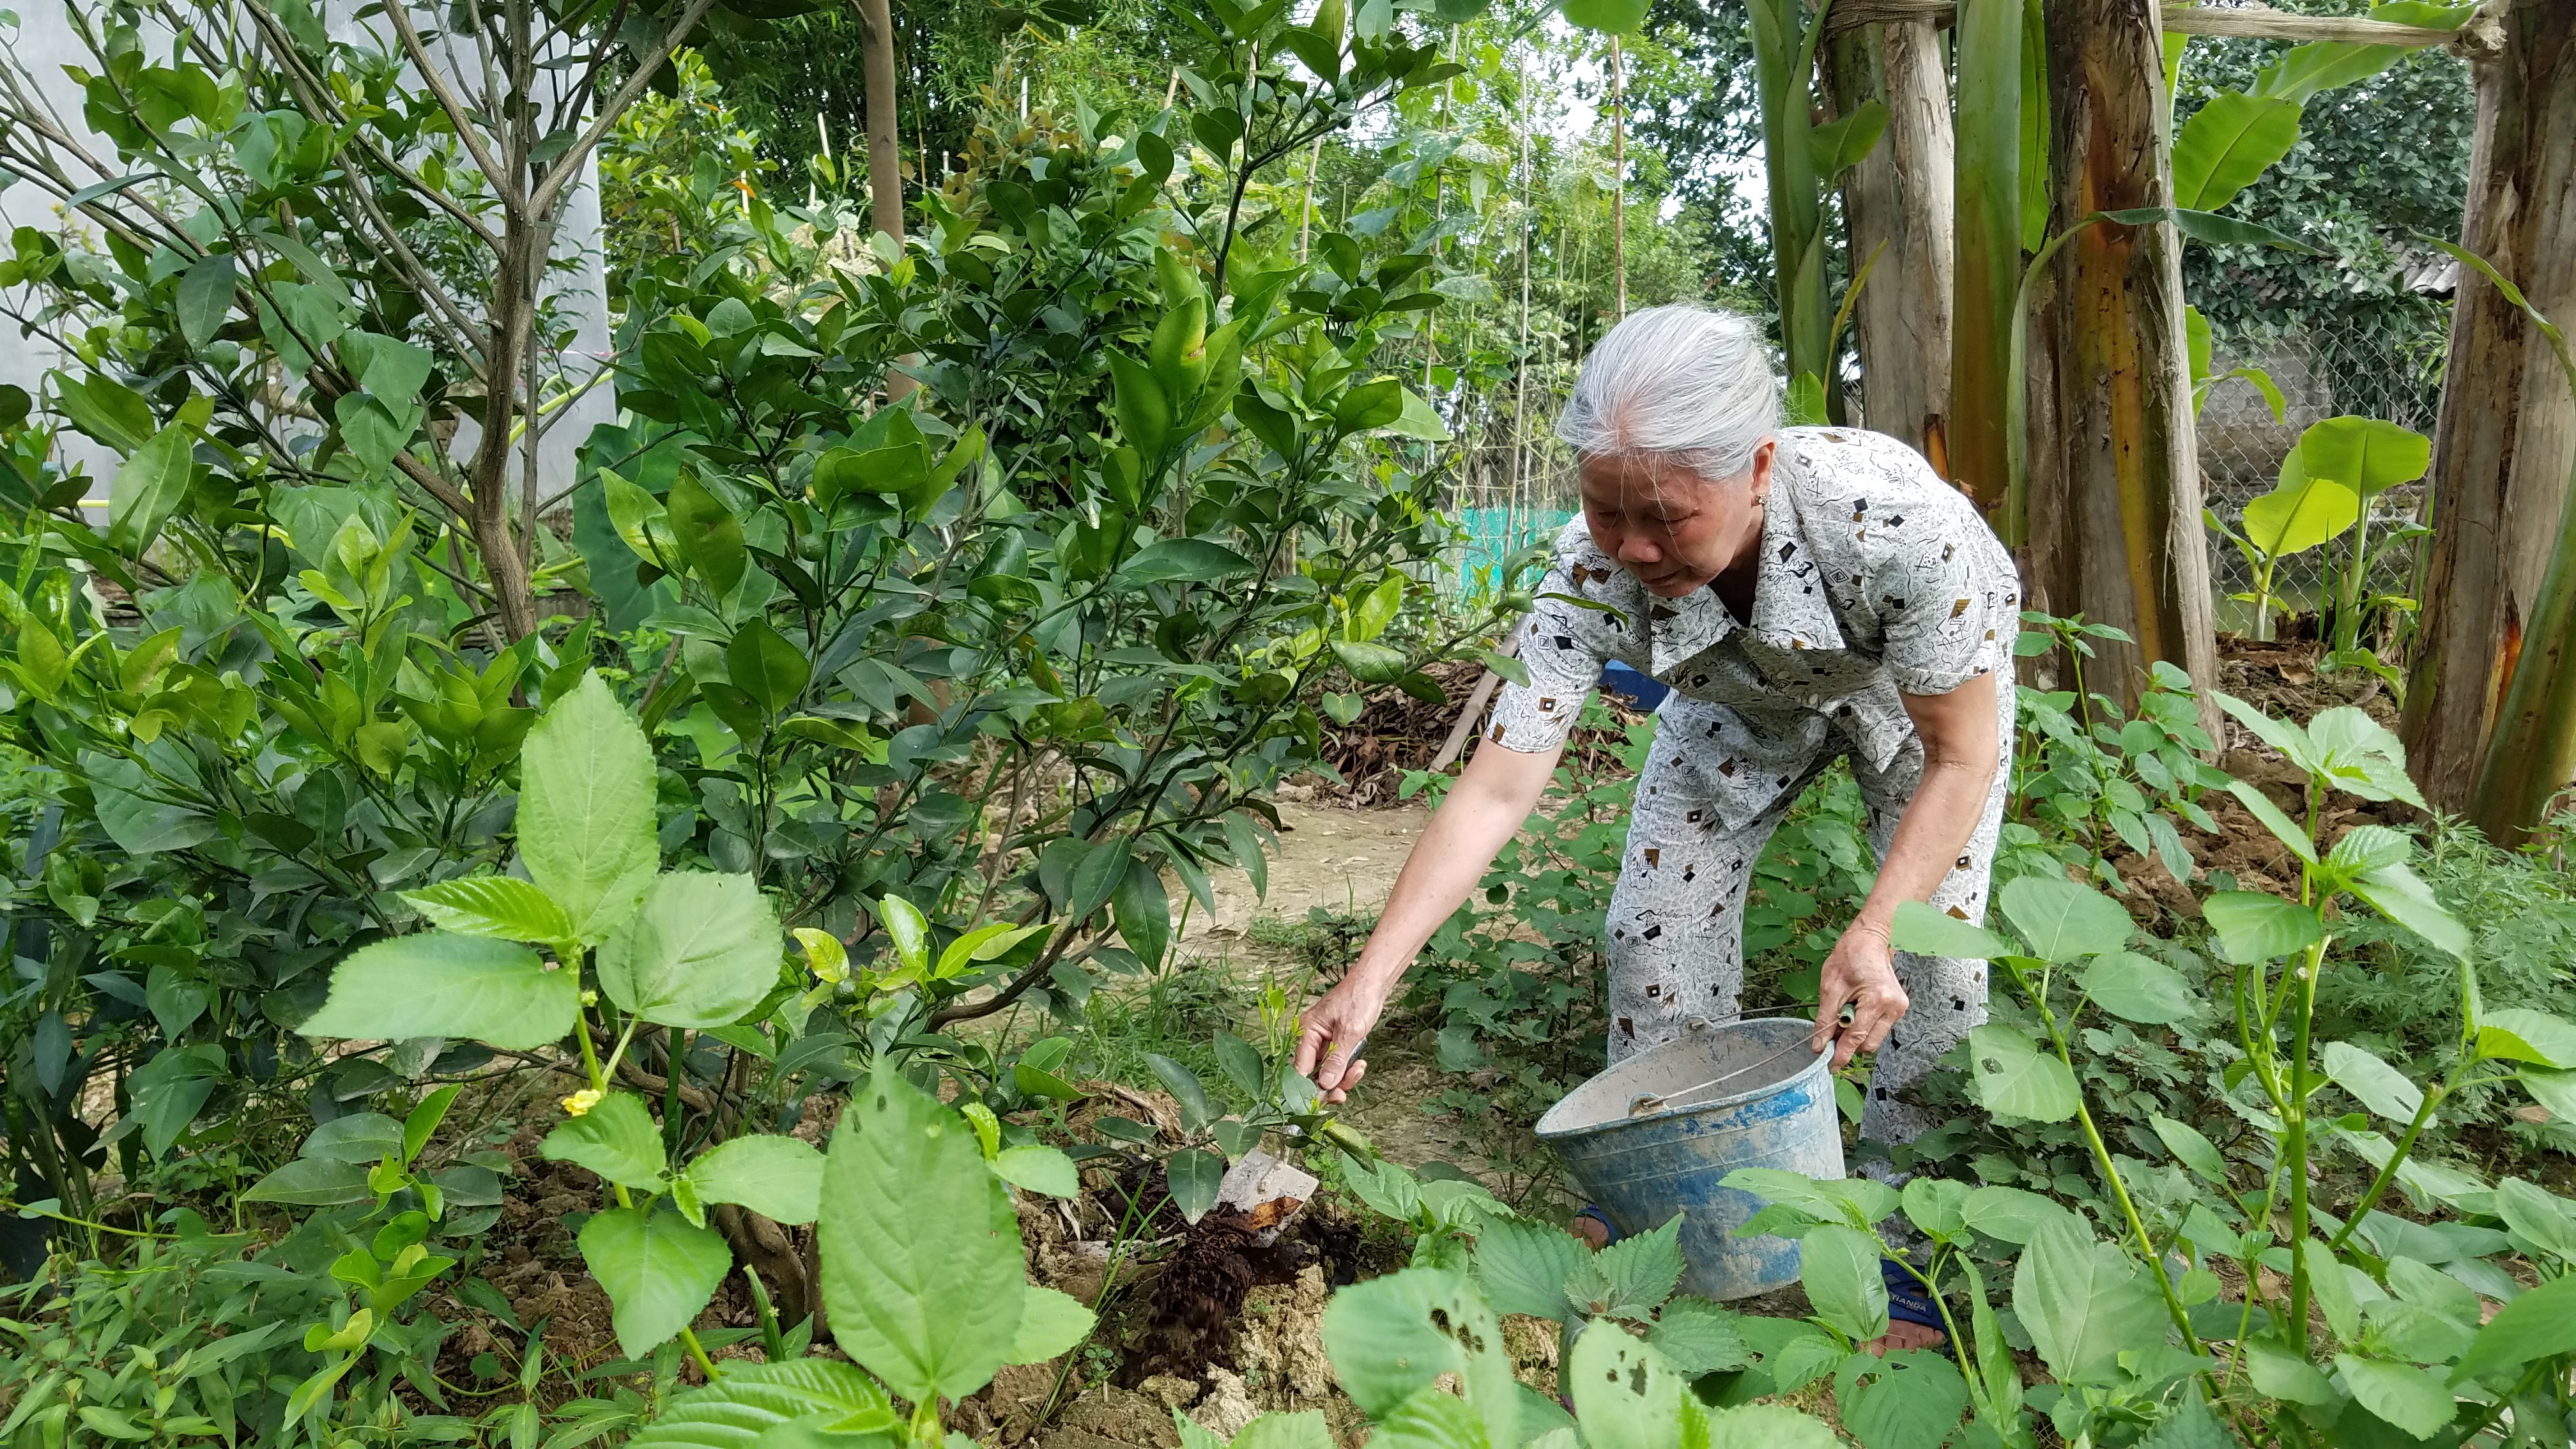 Bà An Thị Lan ở xã Tống Phan, huyện Phù Cừ cũng như nhiều hộ gia đình khu vực nông thôn tỉnh Hưng Yên đã tận dụng, xử lý rác thải hữu cơ làm phân bón cho cây trồng, góp phần bảo vệ môi trường nông thôn.jpg